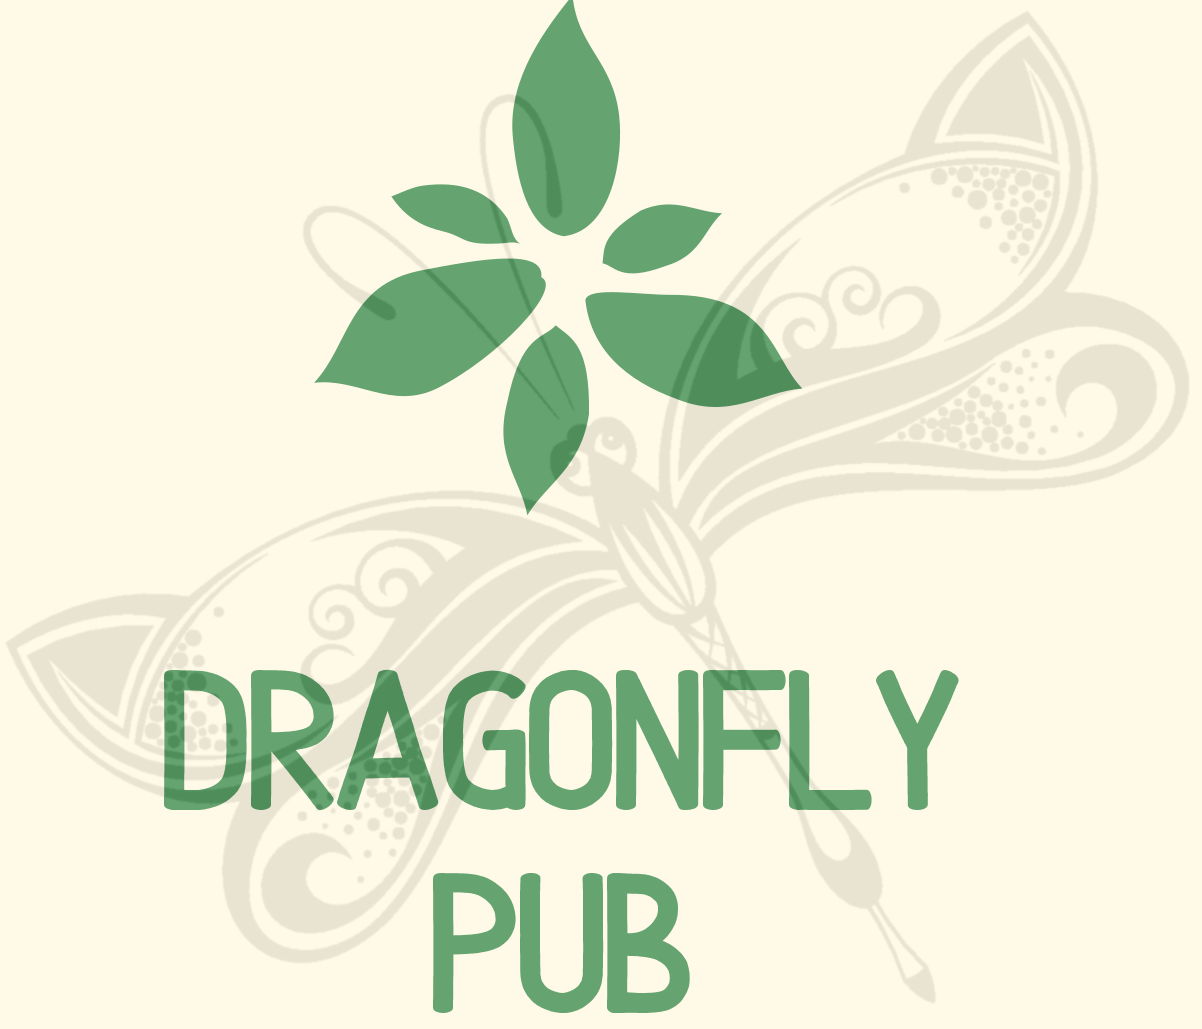 Dragonfly Publishing